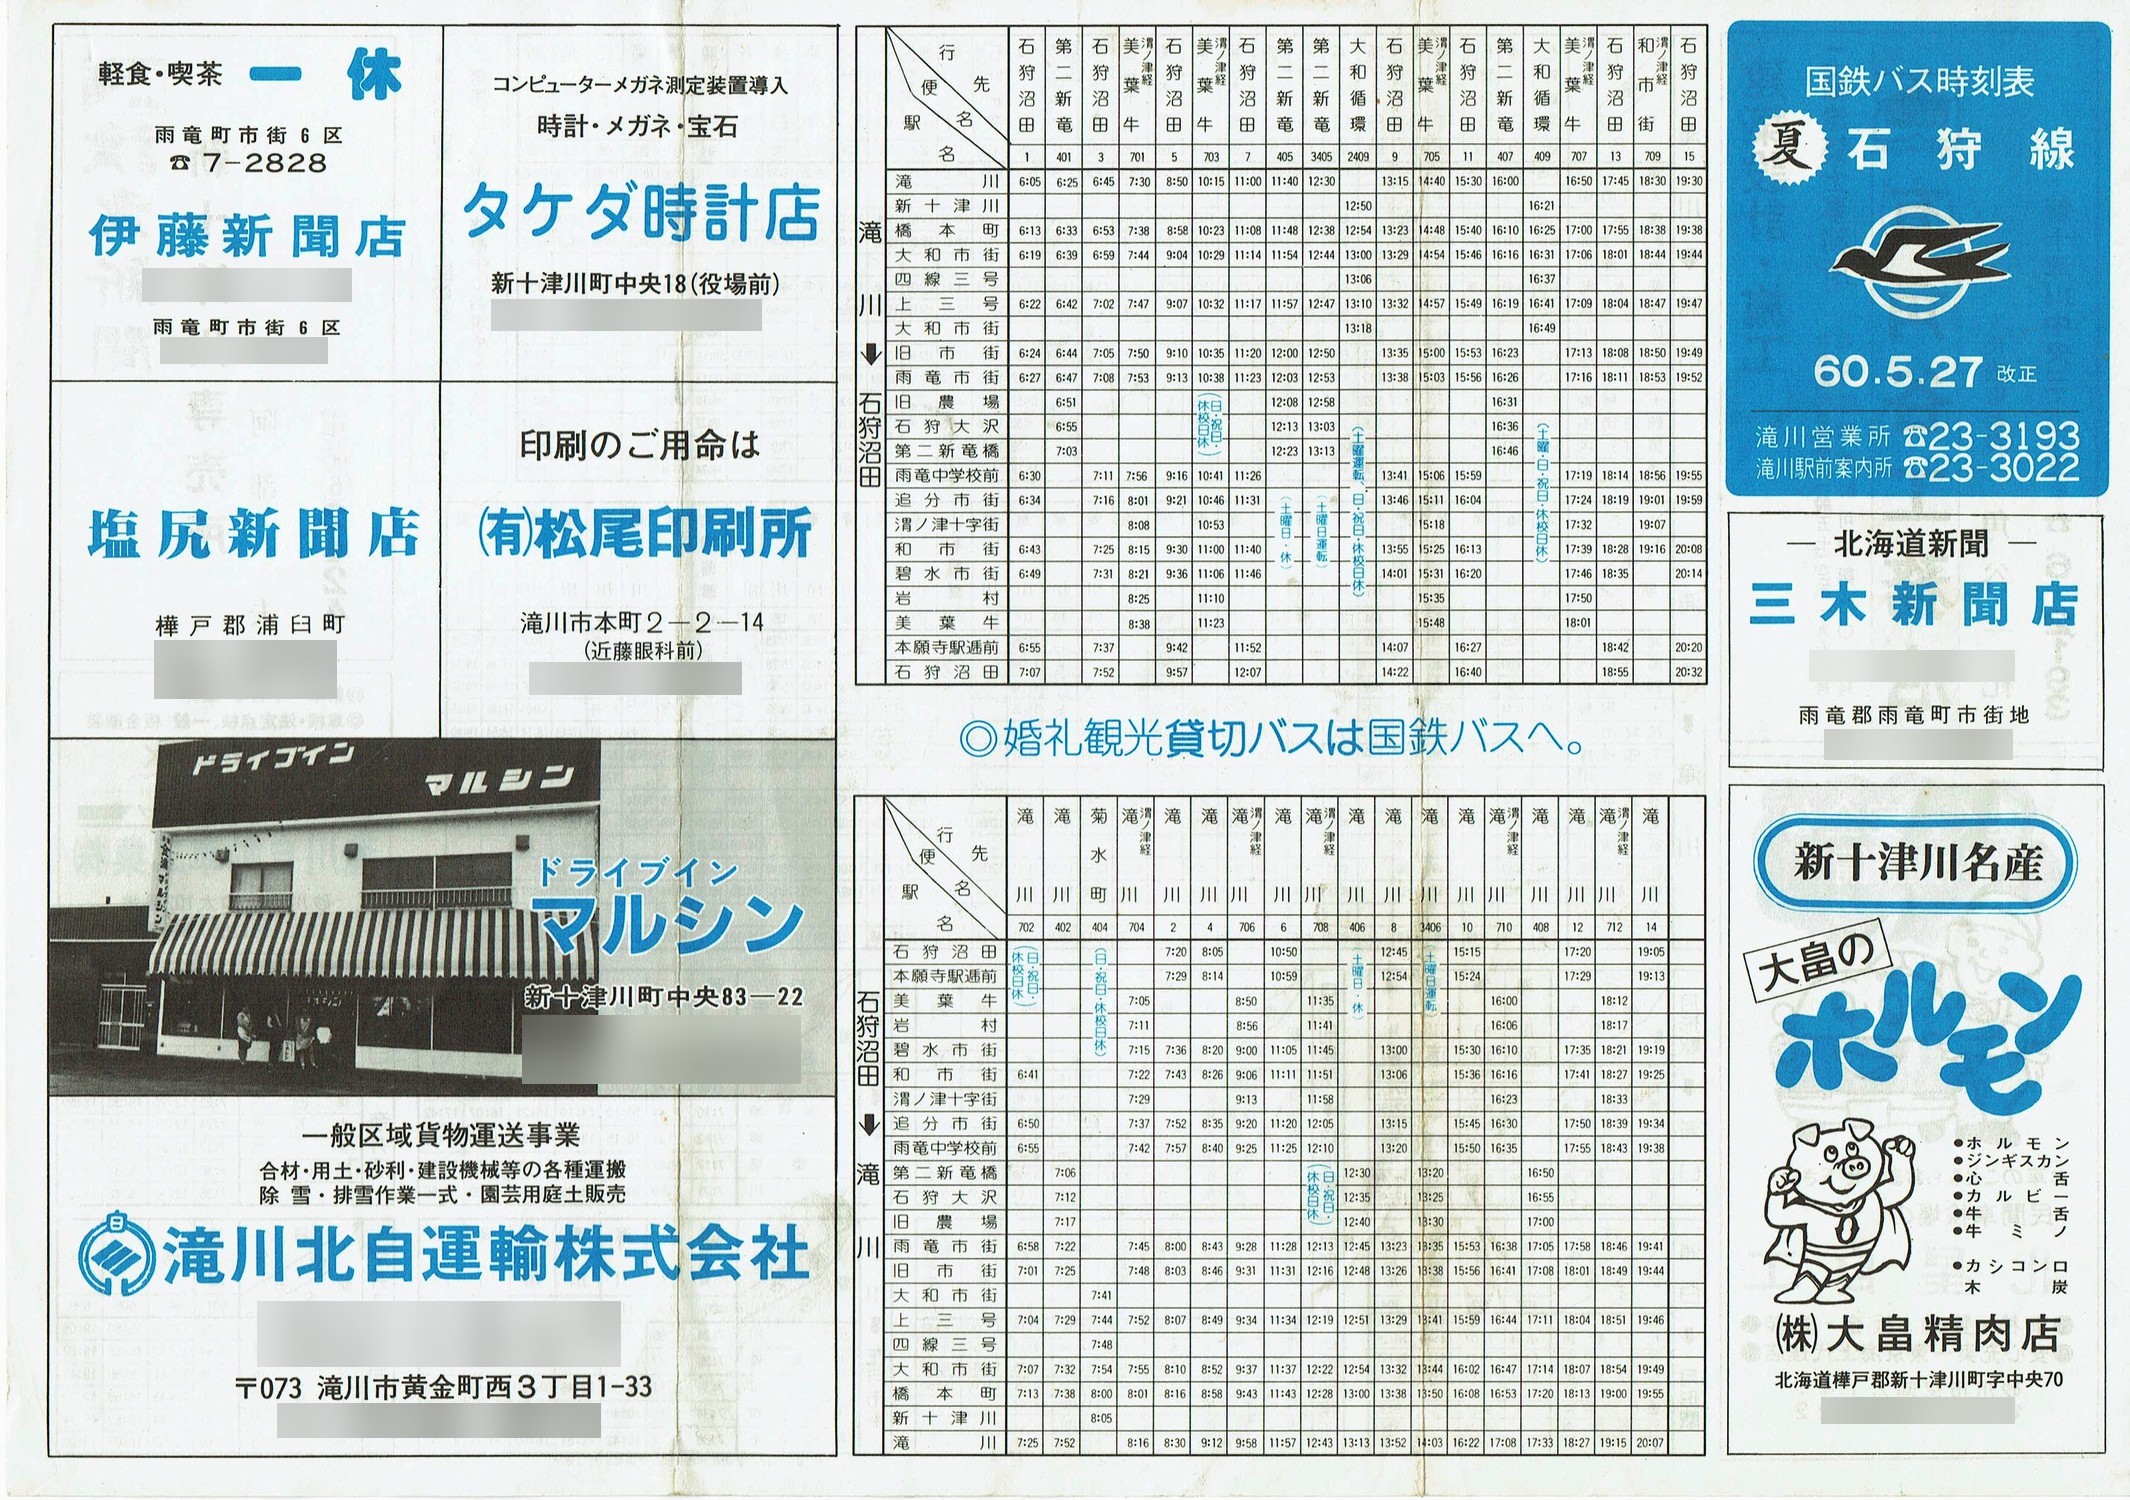 1985-05-27改正_国鉄バス_石狩線時刻表表面